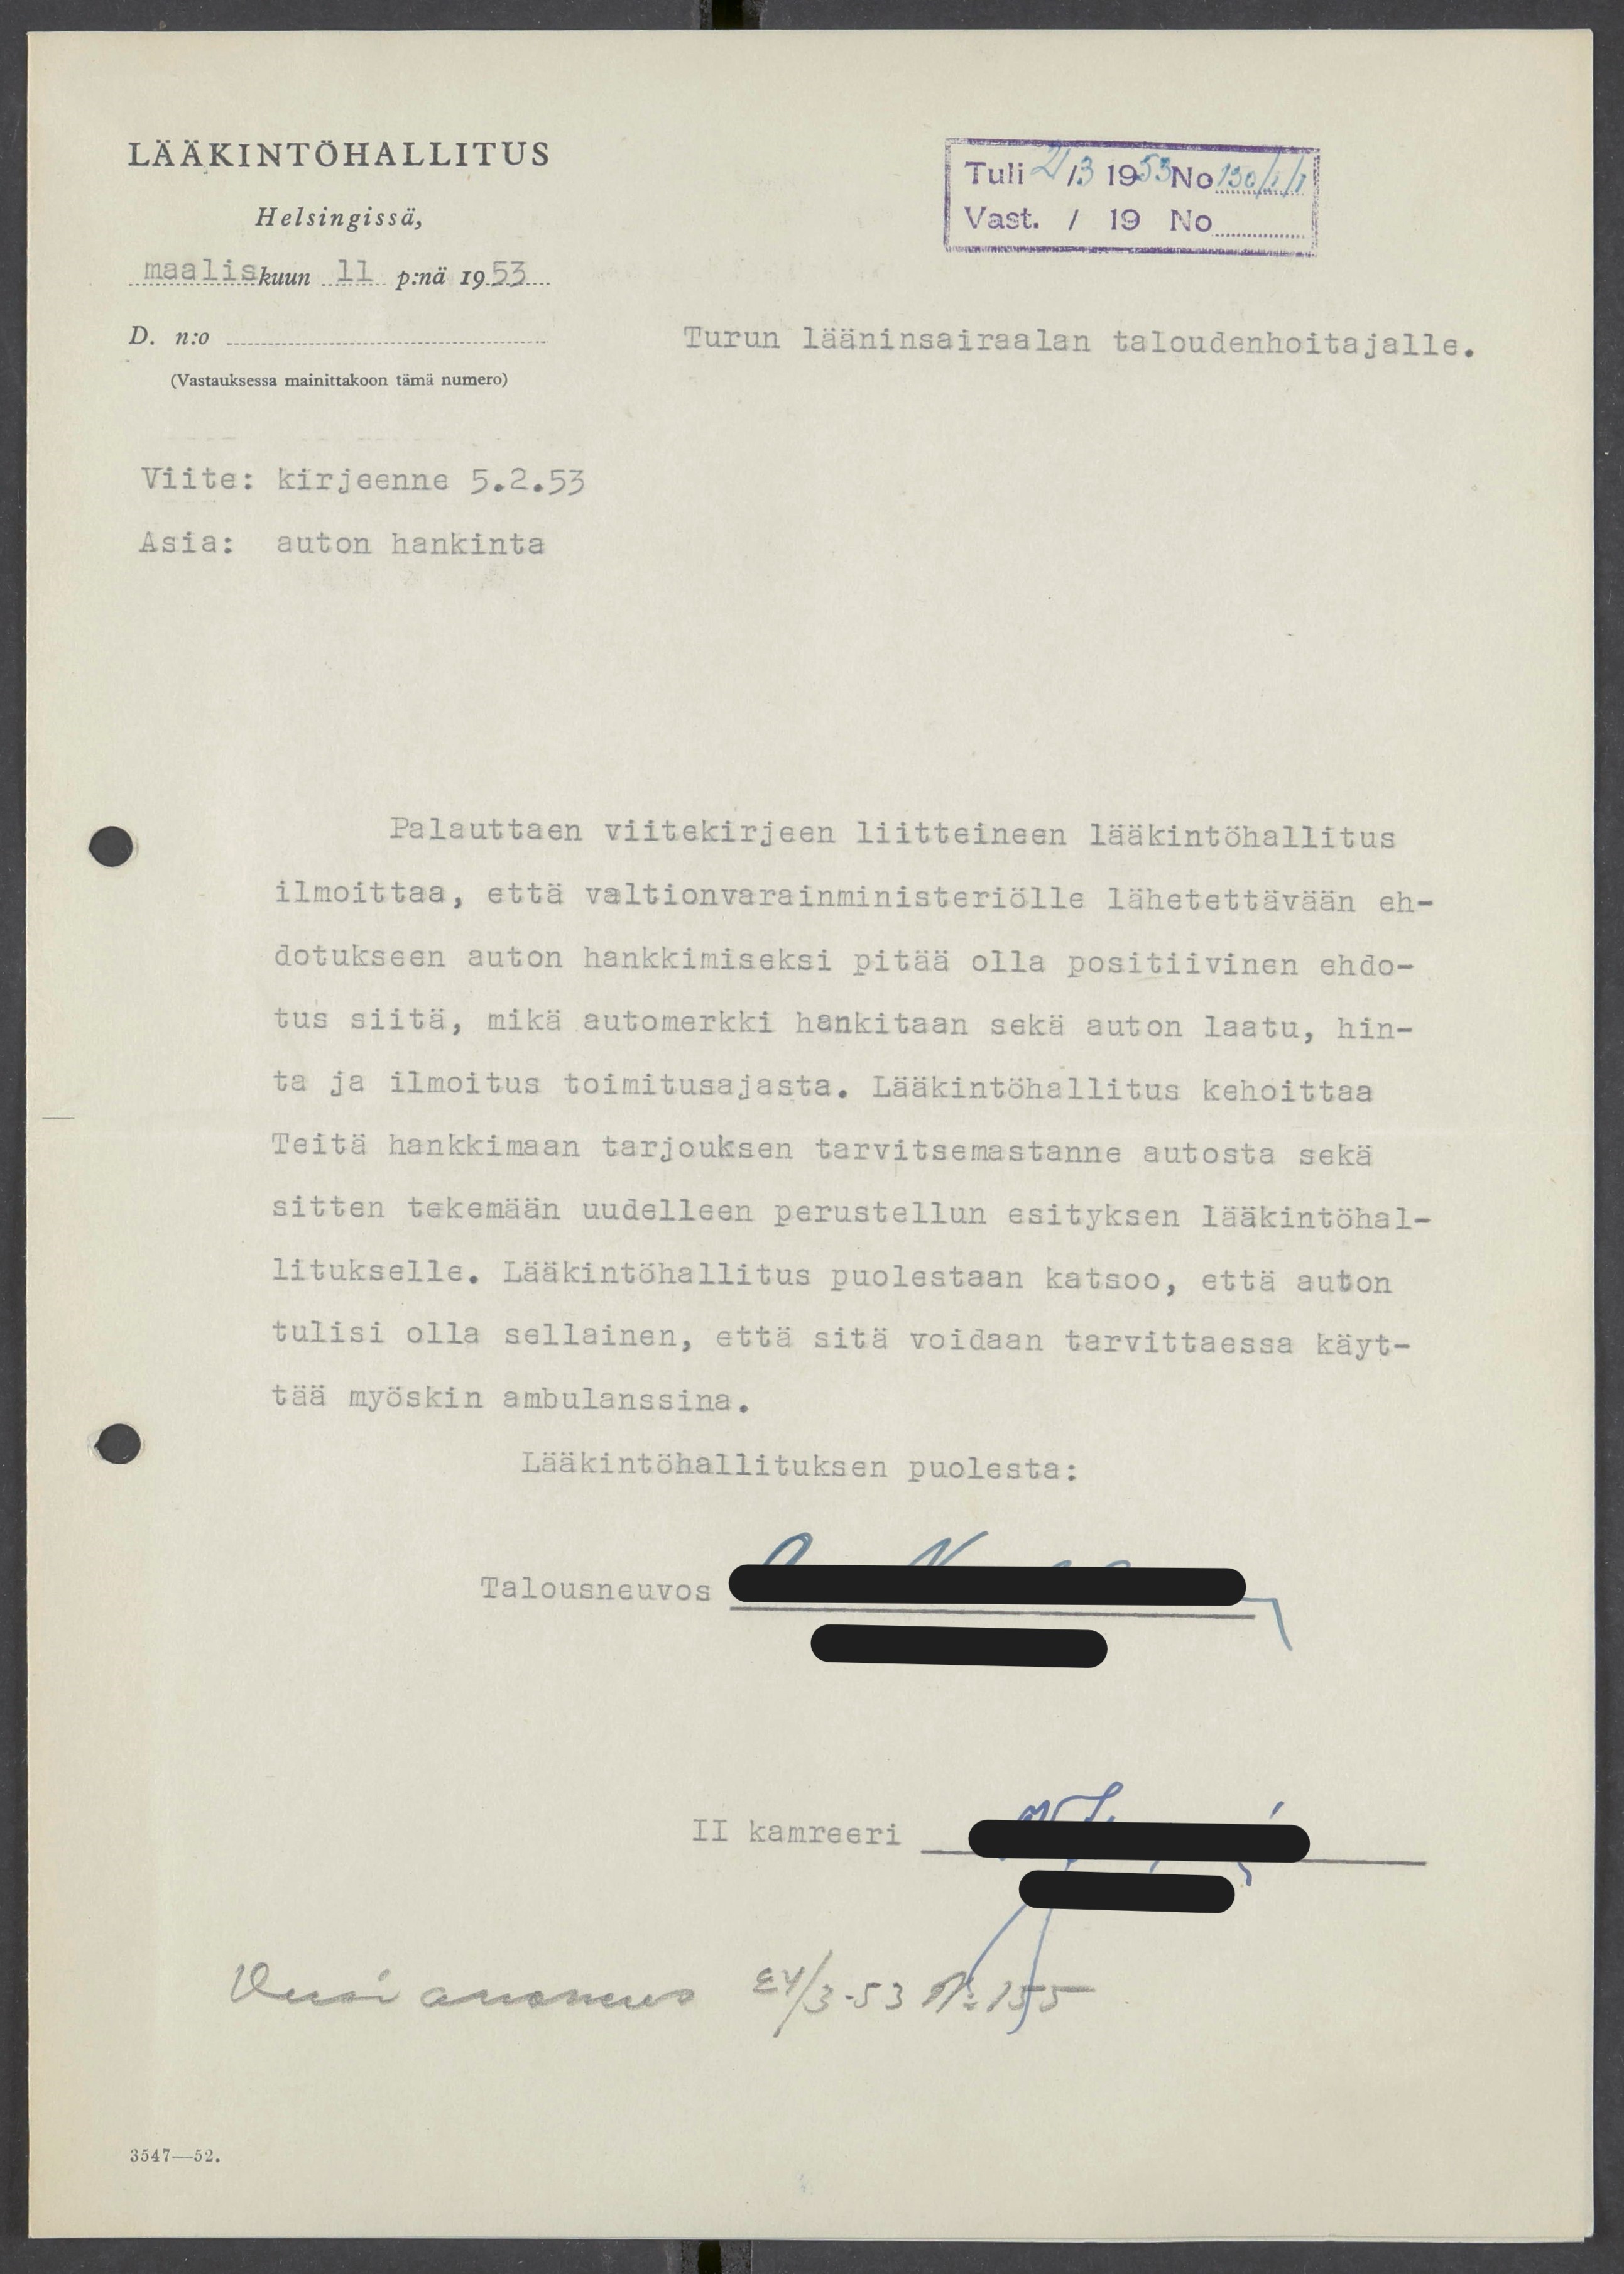 Kuvassa on Lääkintöhallitukselta lääninsairaalalle lähettämä koneella kirjoitettu kirje vuodelta 1953.